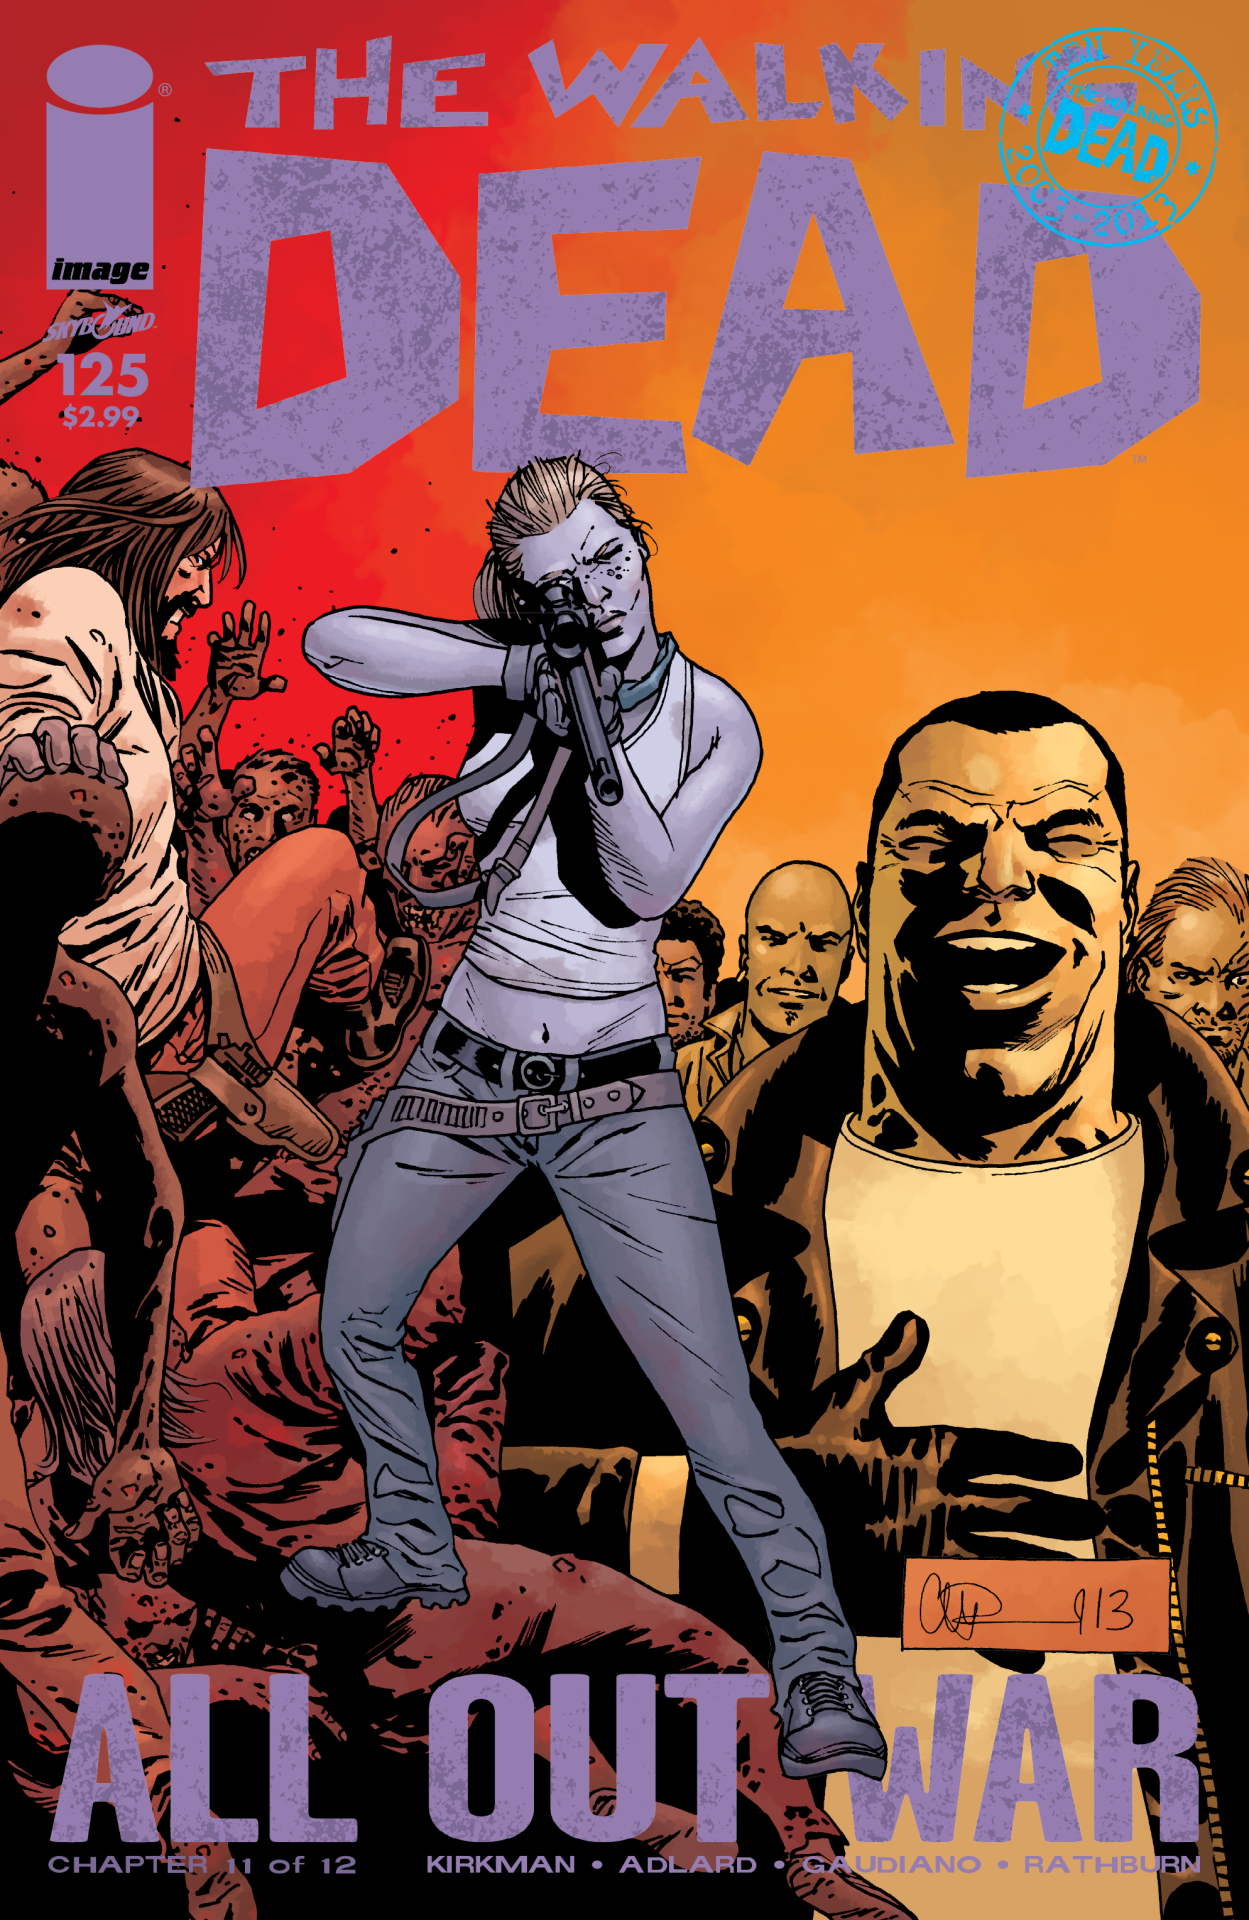 The Walking Dead Comics — THE WALKING DEAD #125 The fuck fucking fuckity...